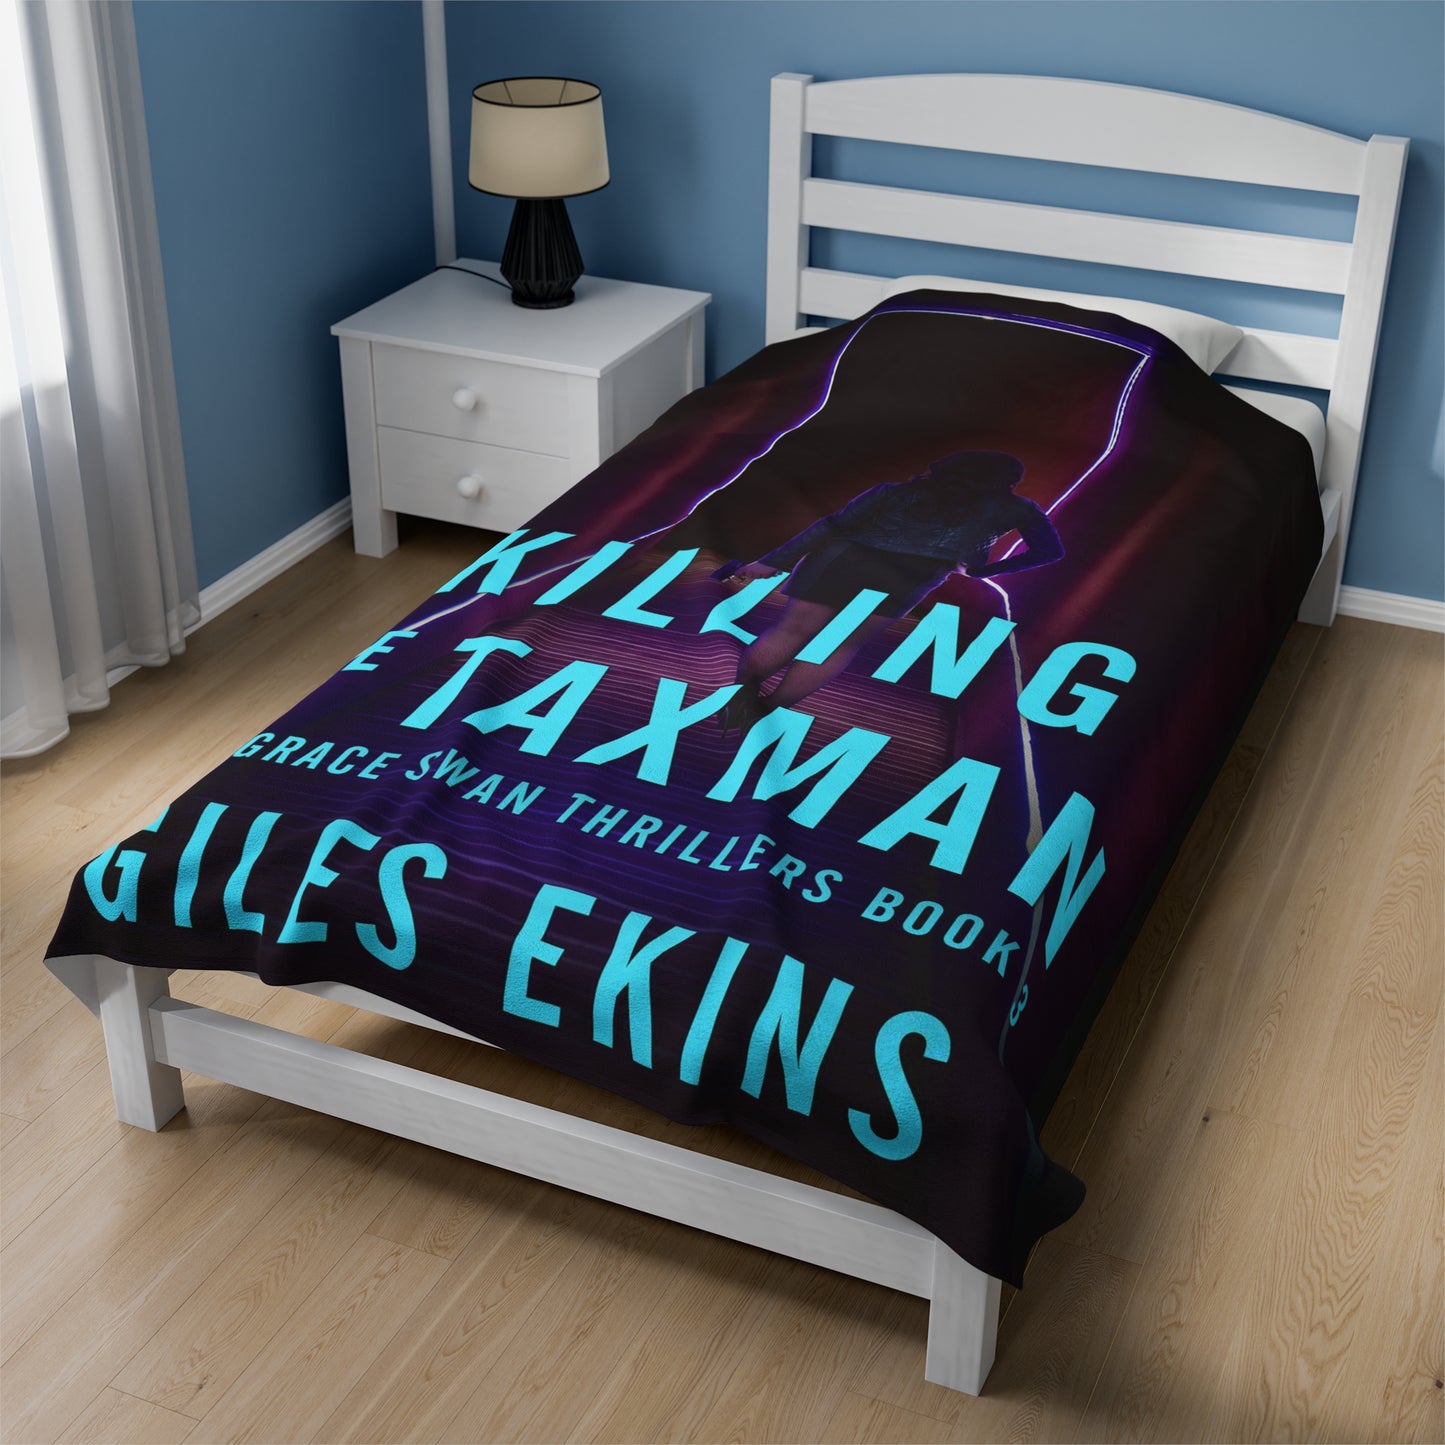 Killing The Taxman - Velveteen Plush Blanket